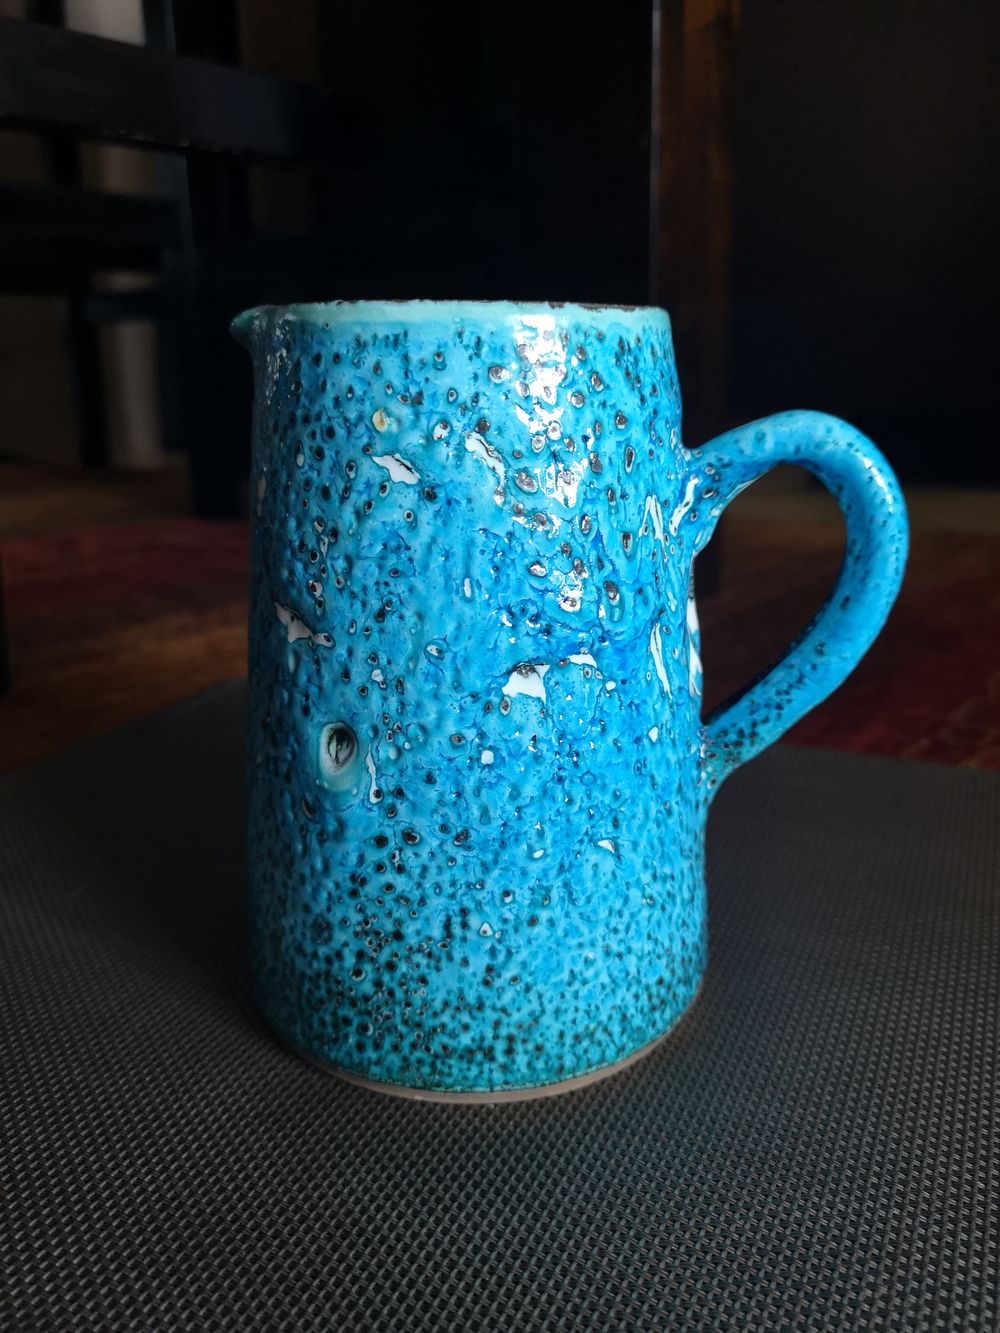 Pichet en céramique émaillée bleu, sans signature apparente 17415610